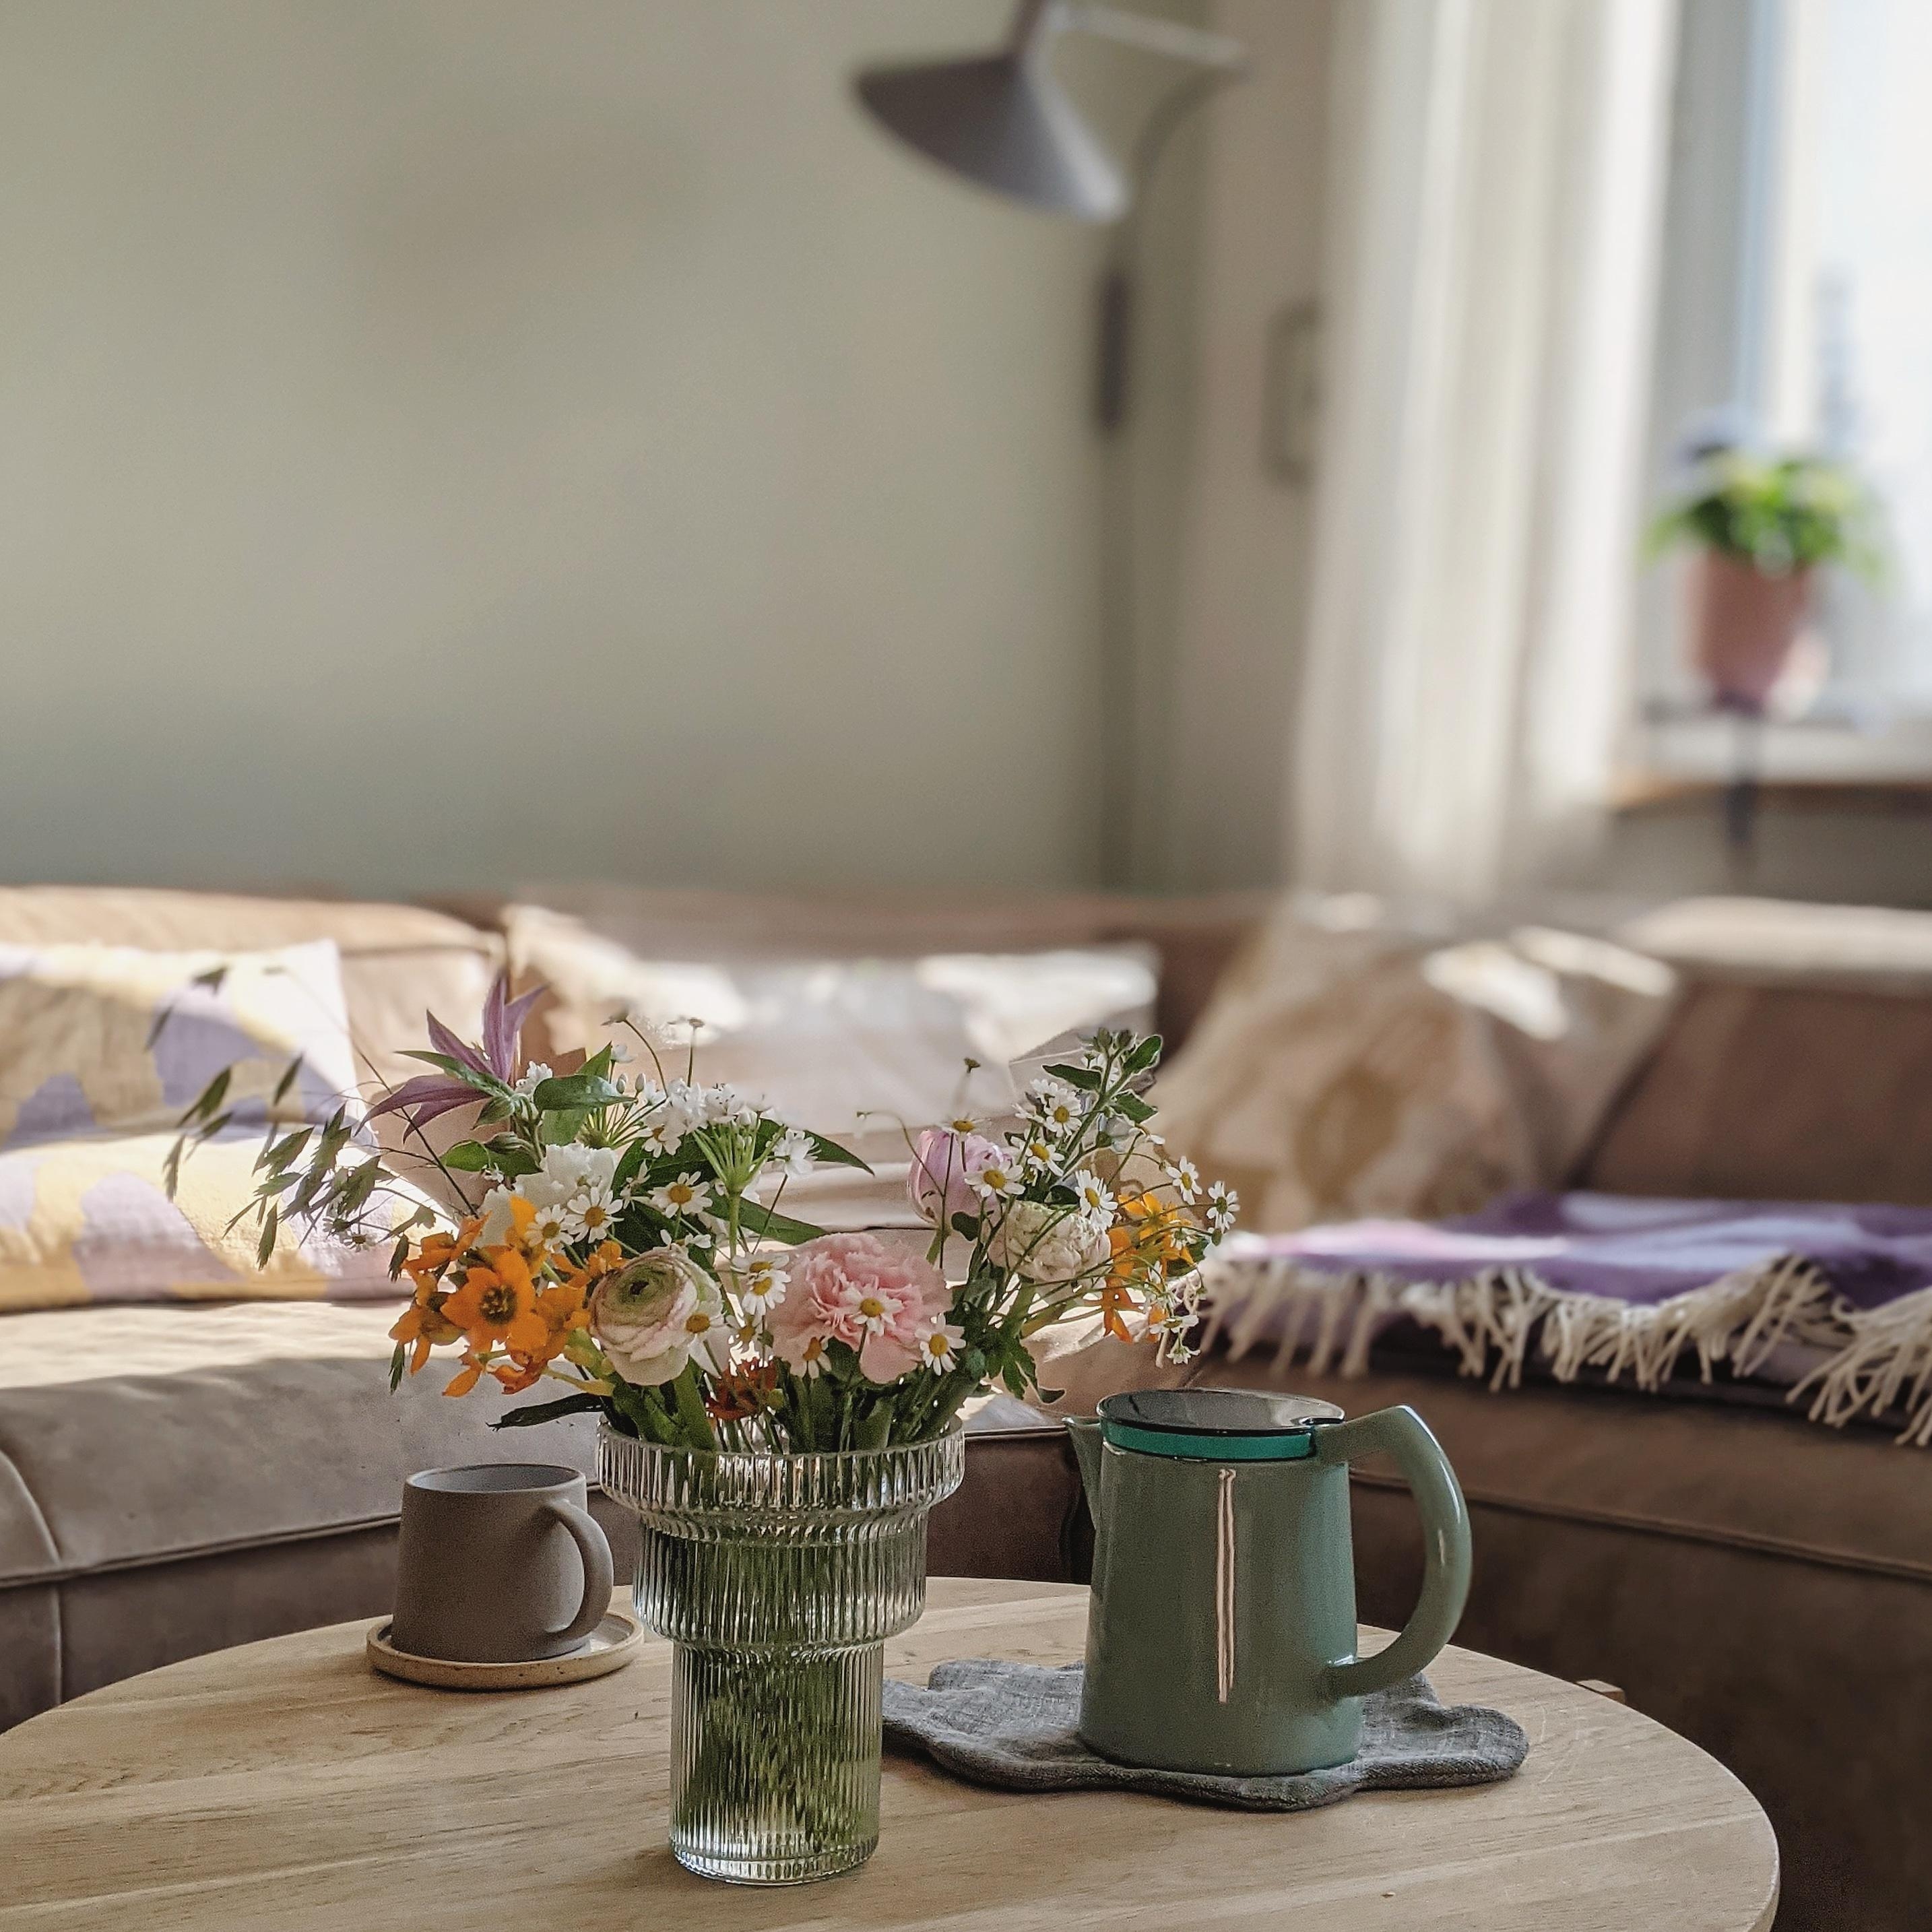 #livingroom #homedecor #interior#decoration#altbau #homestory#blumen#wohnzimmer #couchstyle#scandinavisch#living#cozy